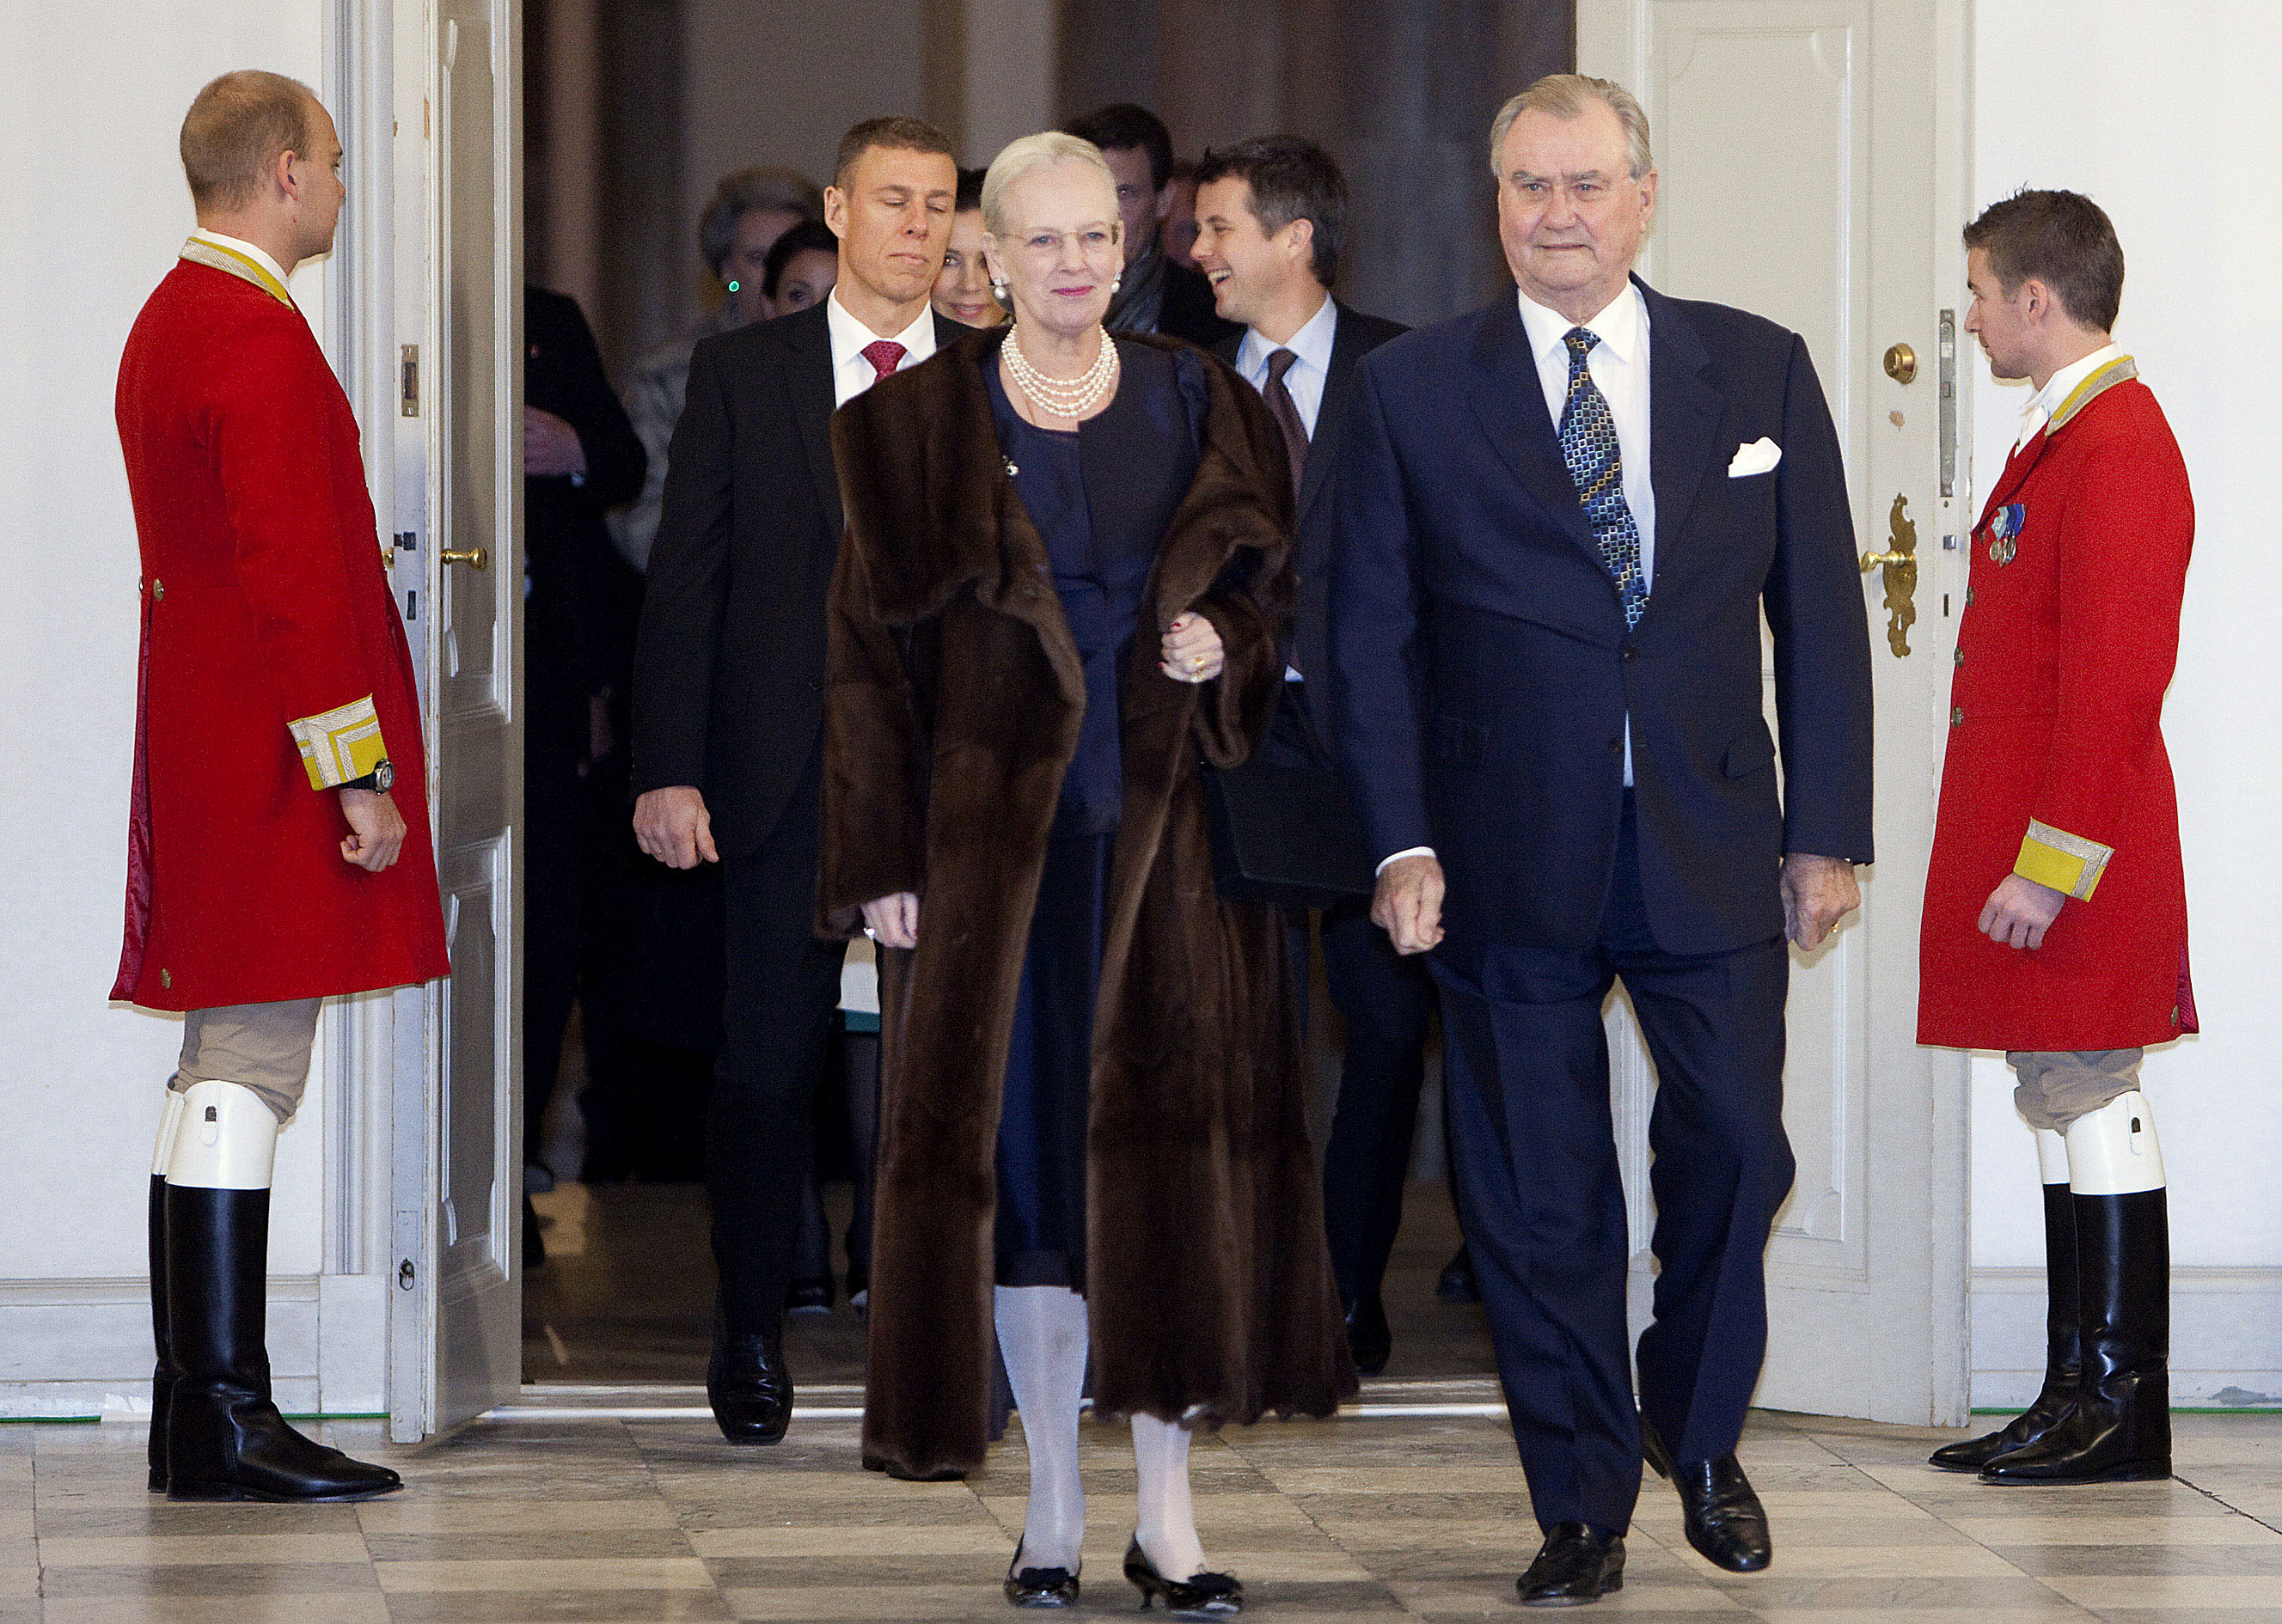 Danmarks drottning Margrethe och hennes gemål prins Henri höll i galamiddagen där Reinfedt lyckades övertala de andra ledarna till krismötet.